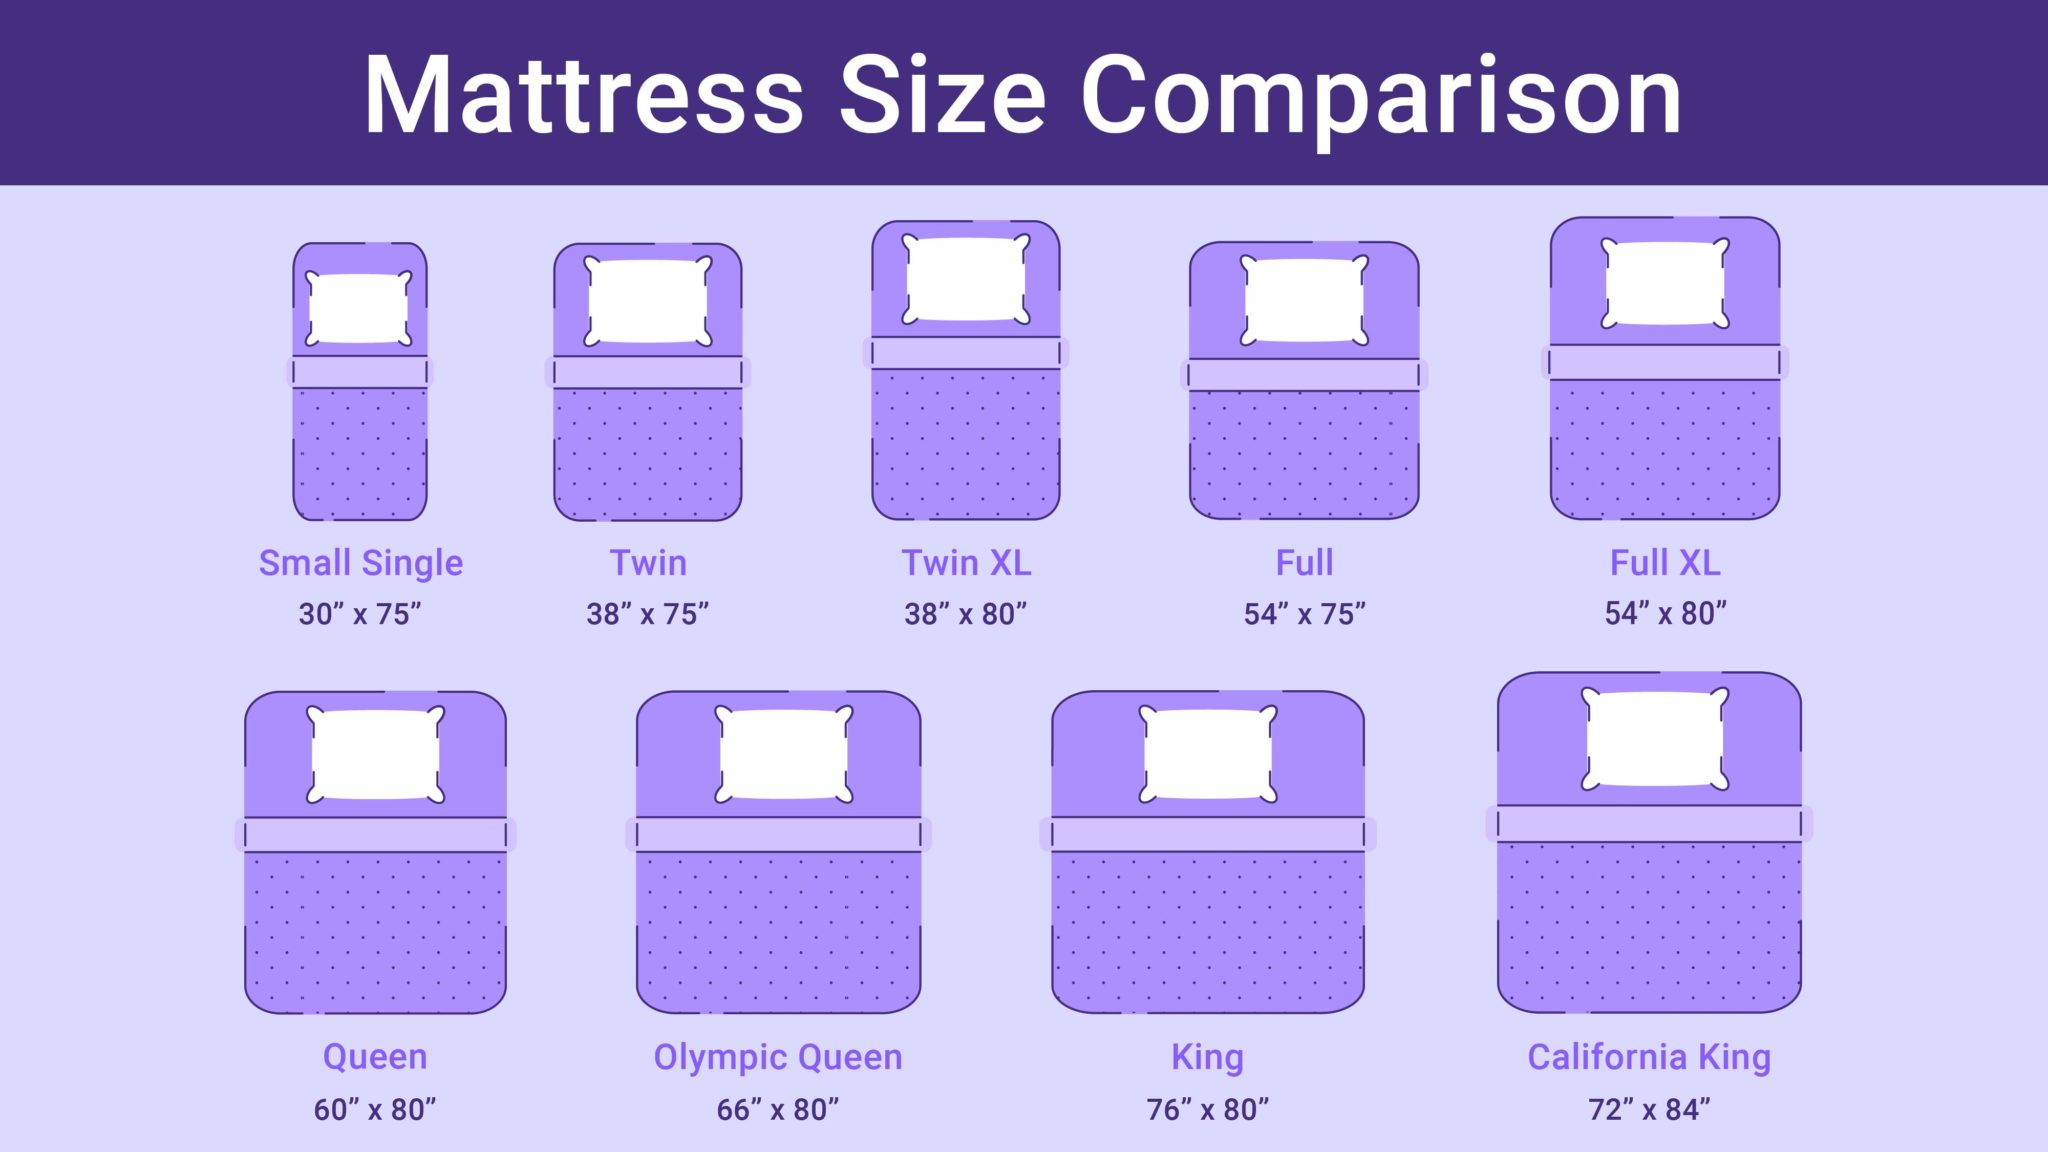 full size mattress vs full xl